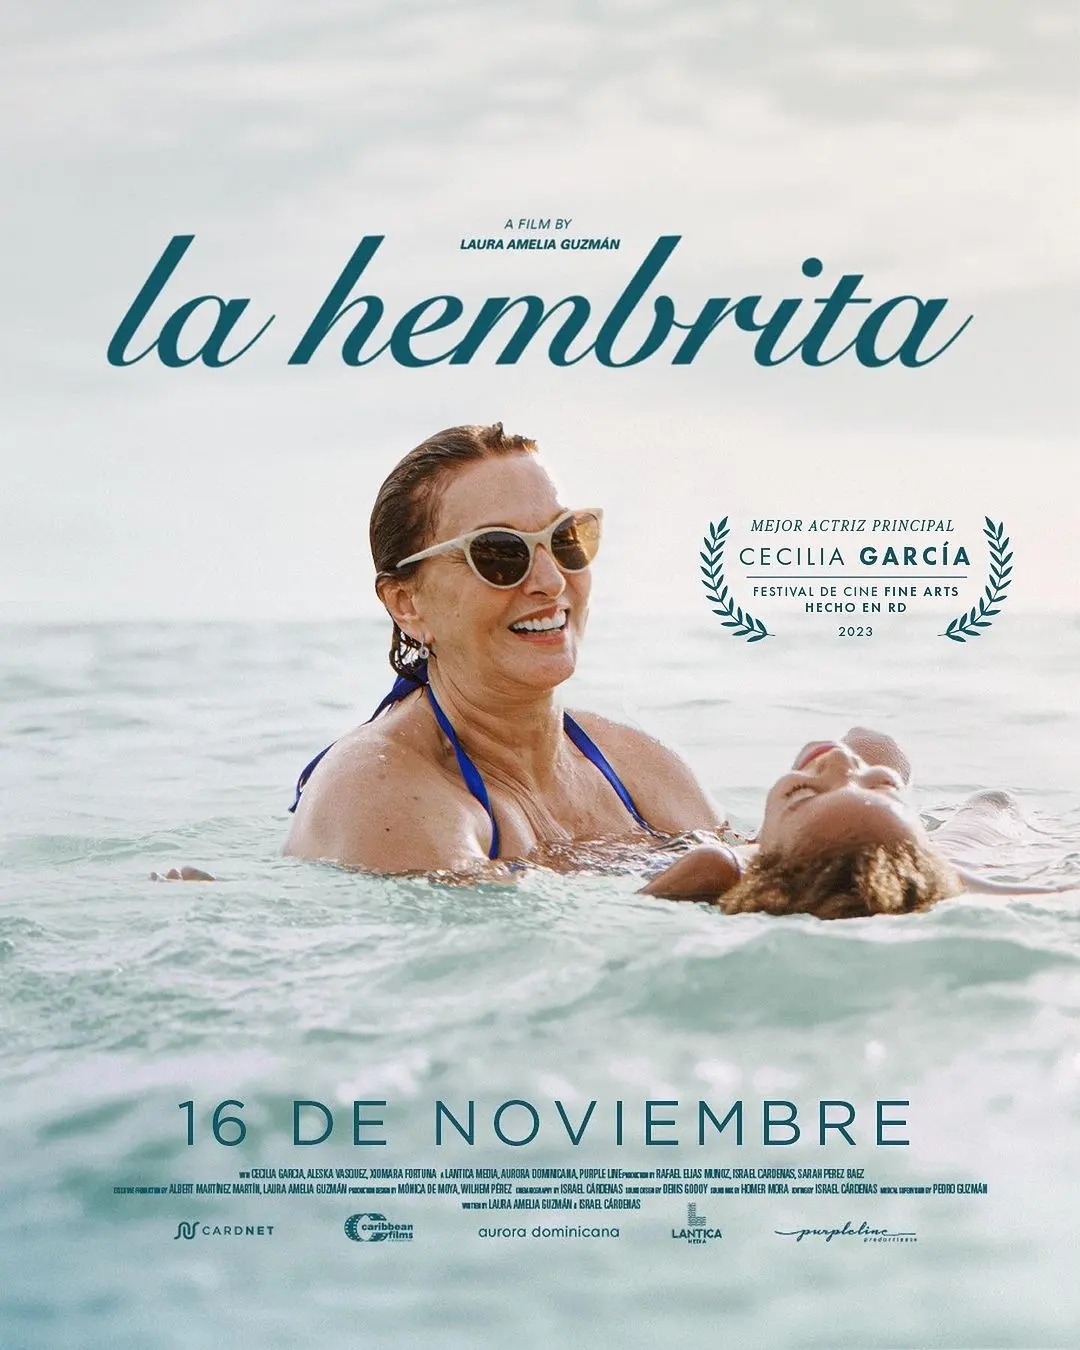 Cecilia García triunfa en Premios La Silla con "La Hembrita"